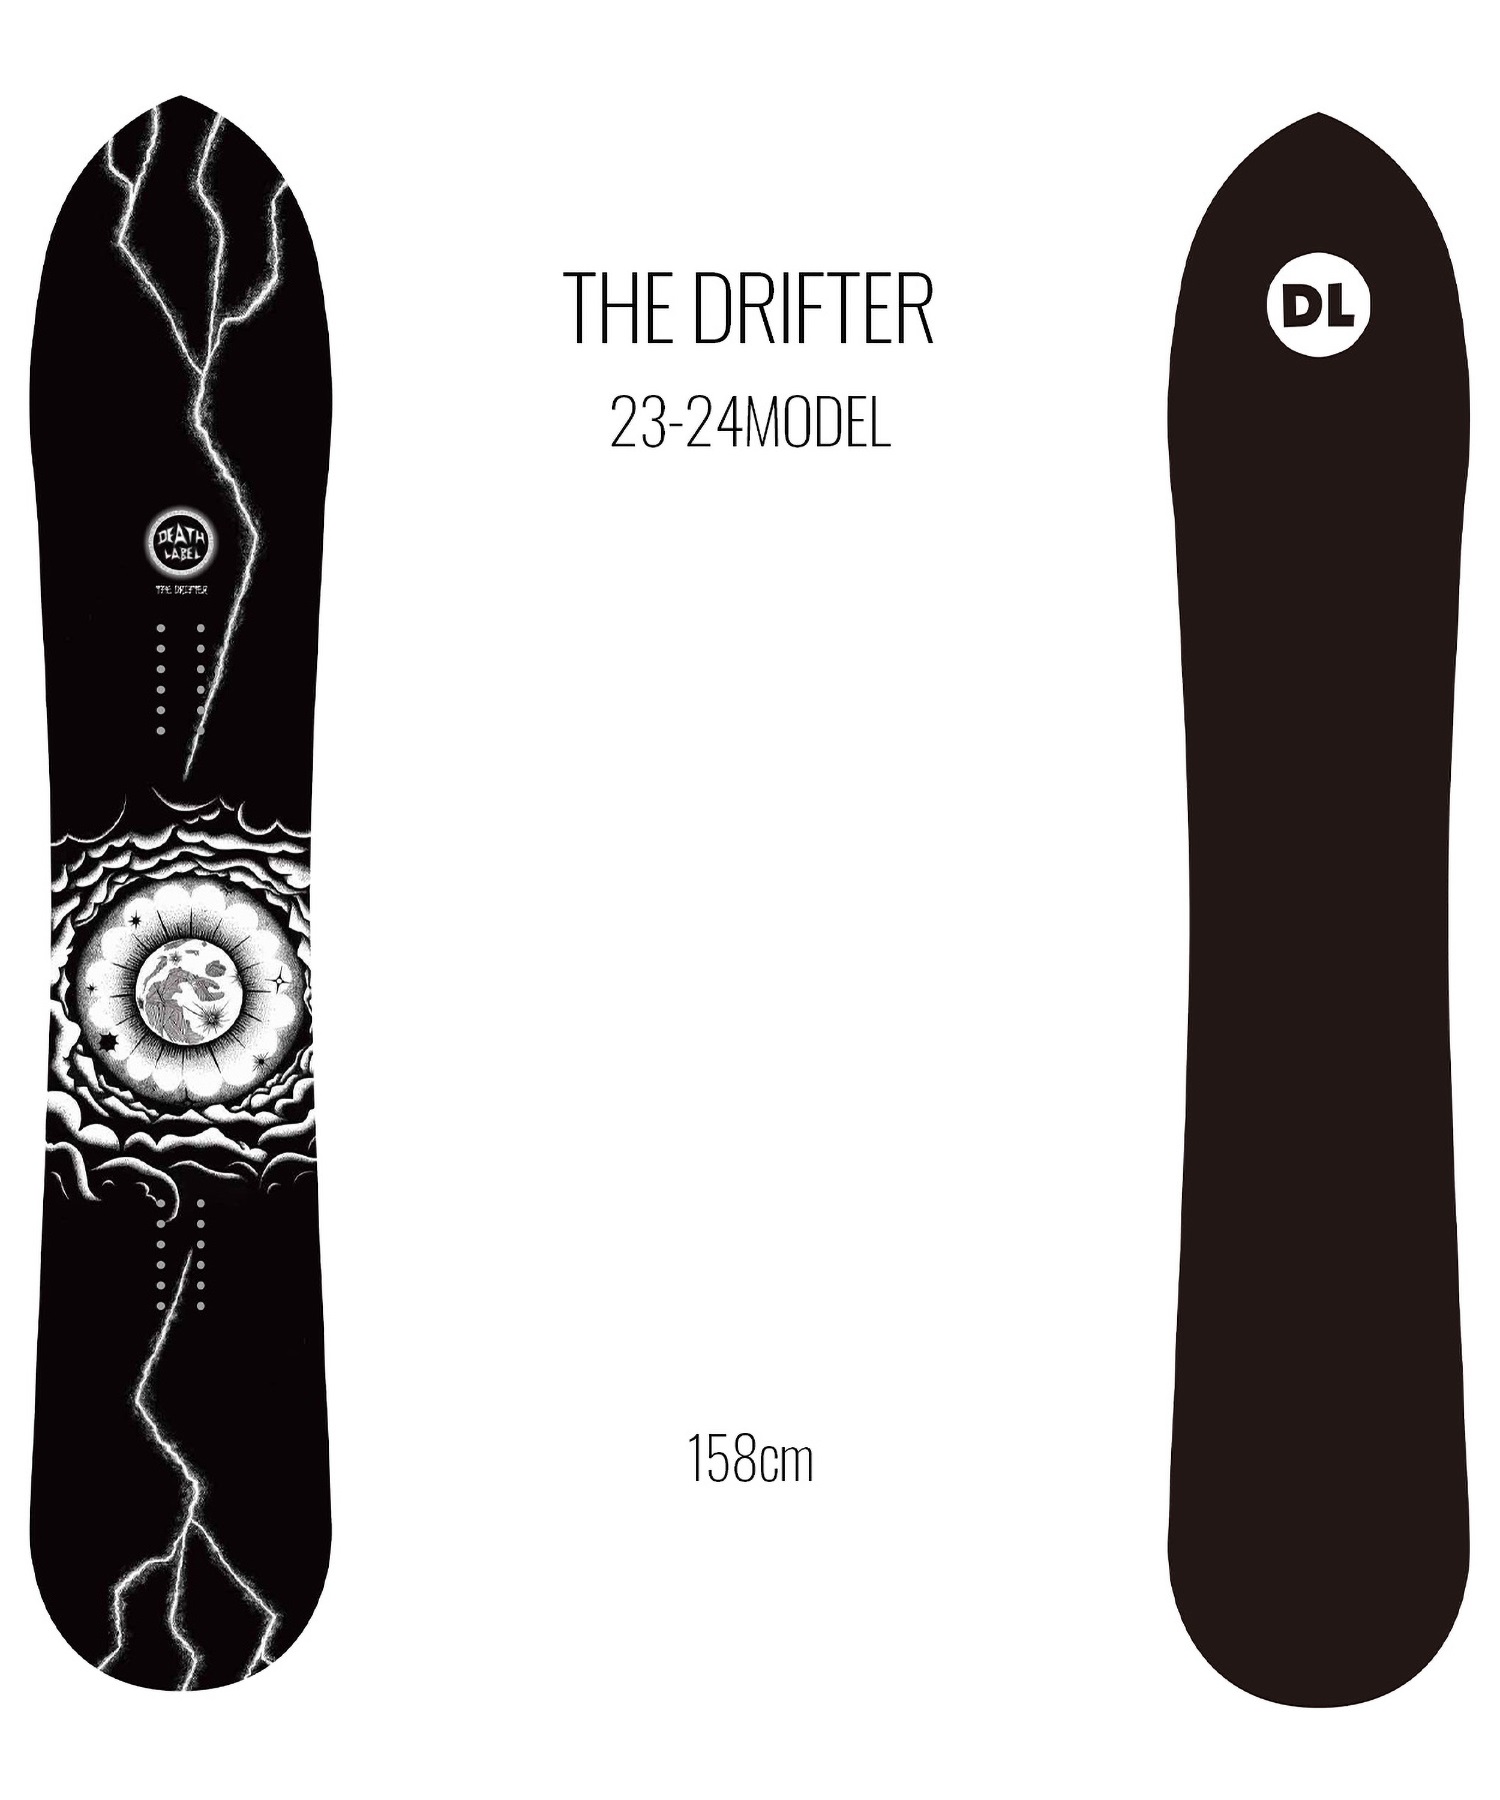 【早期購入/店頭受取対象外】スノーボード 板 メンズ DEATH LABEL デスレーベル THE DRIFTER 23-24モデル ムラサキスポーツ KK C2(THEDRIFTER-158cm)